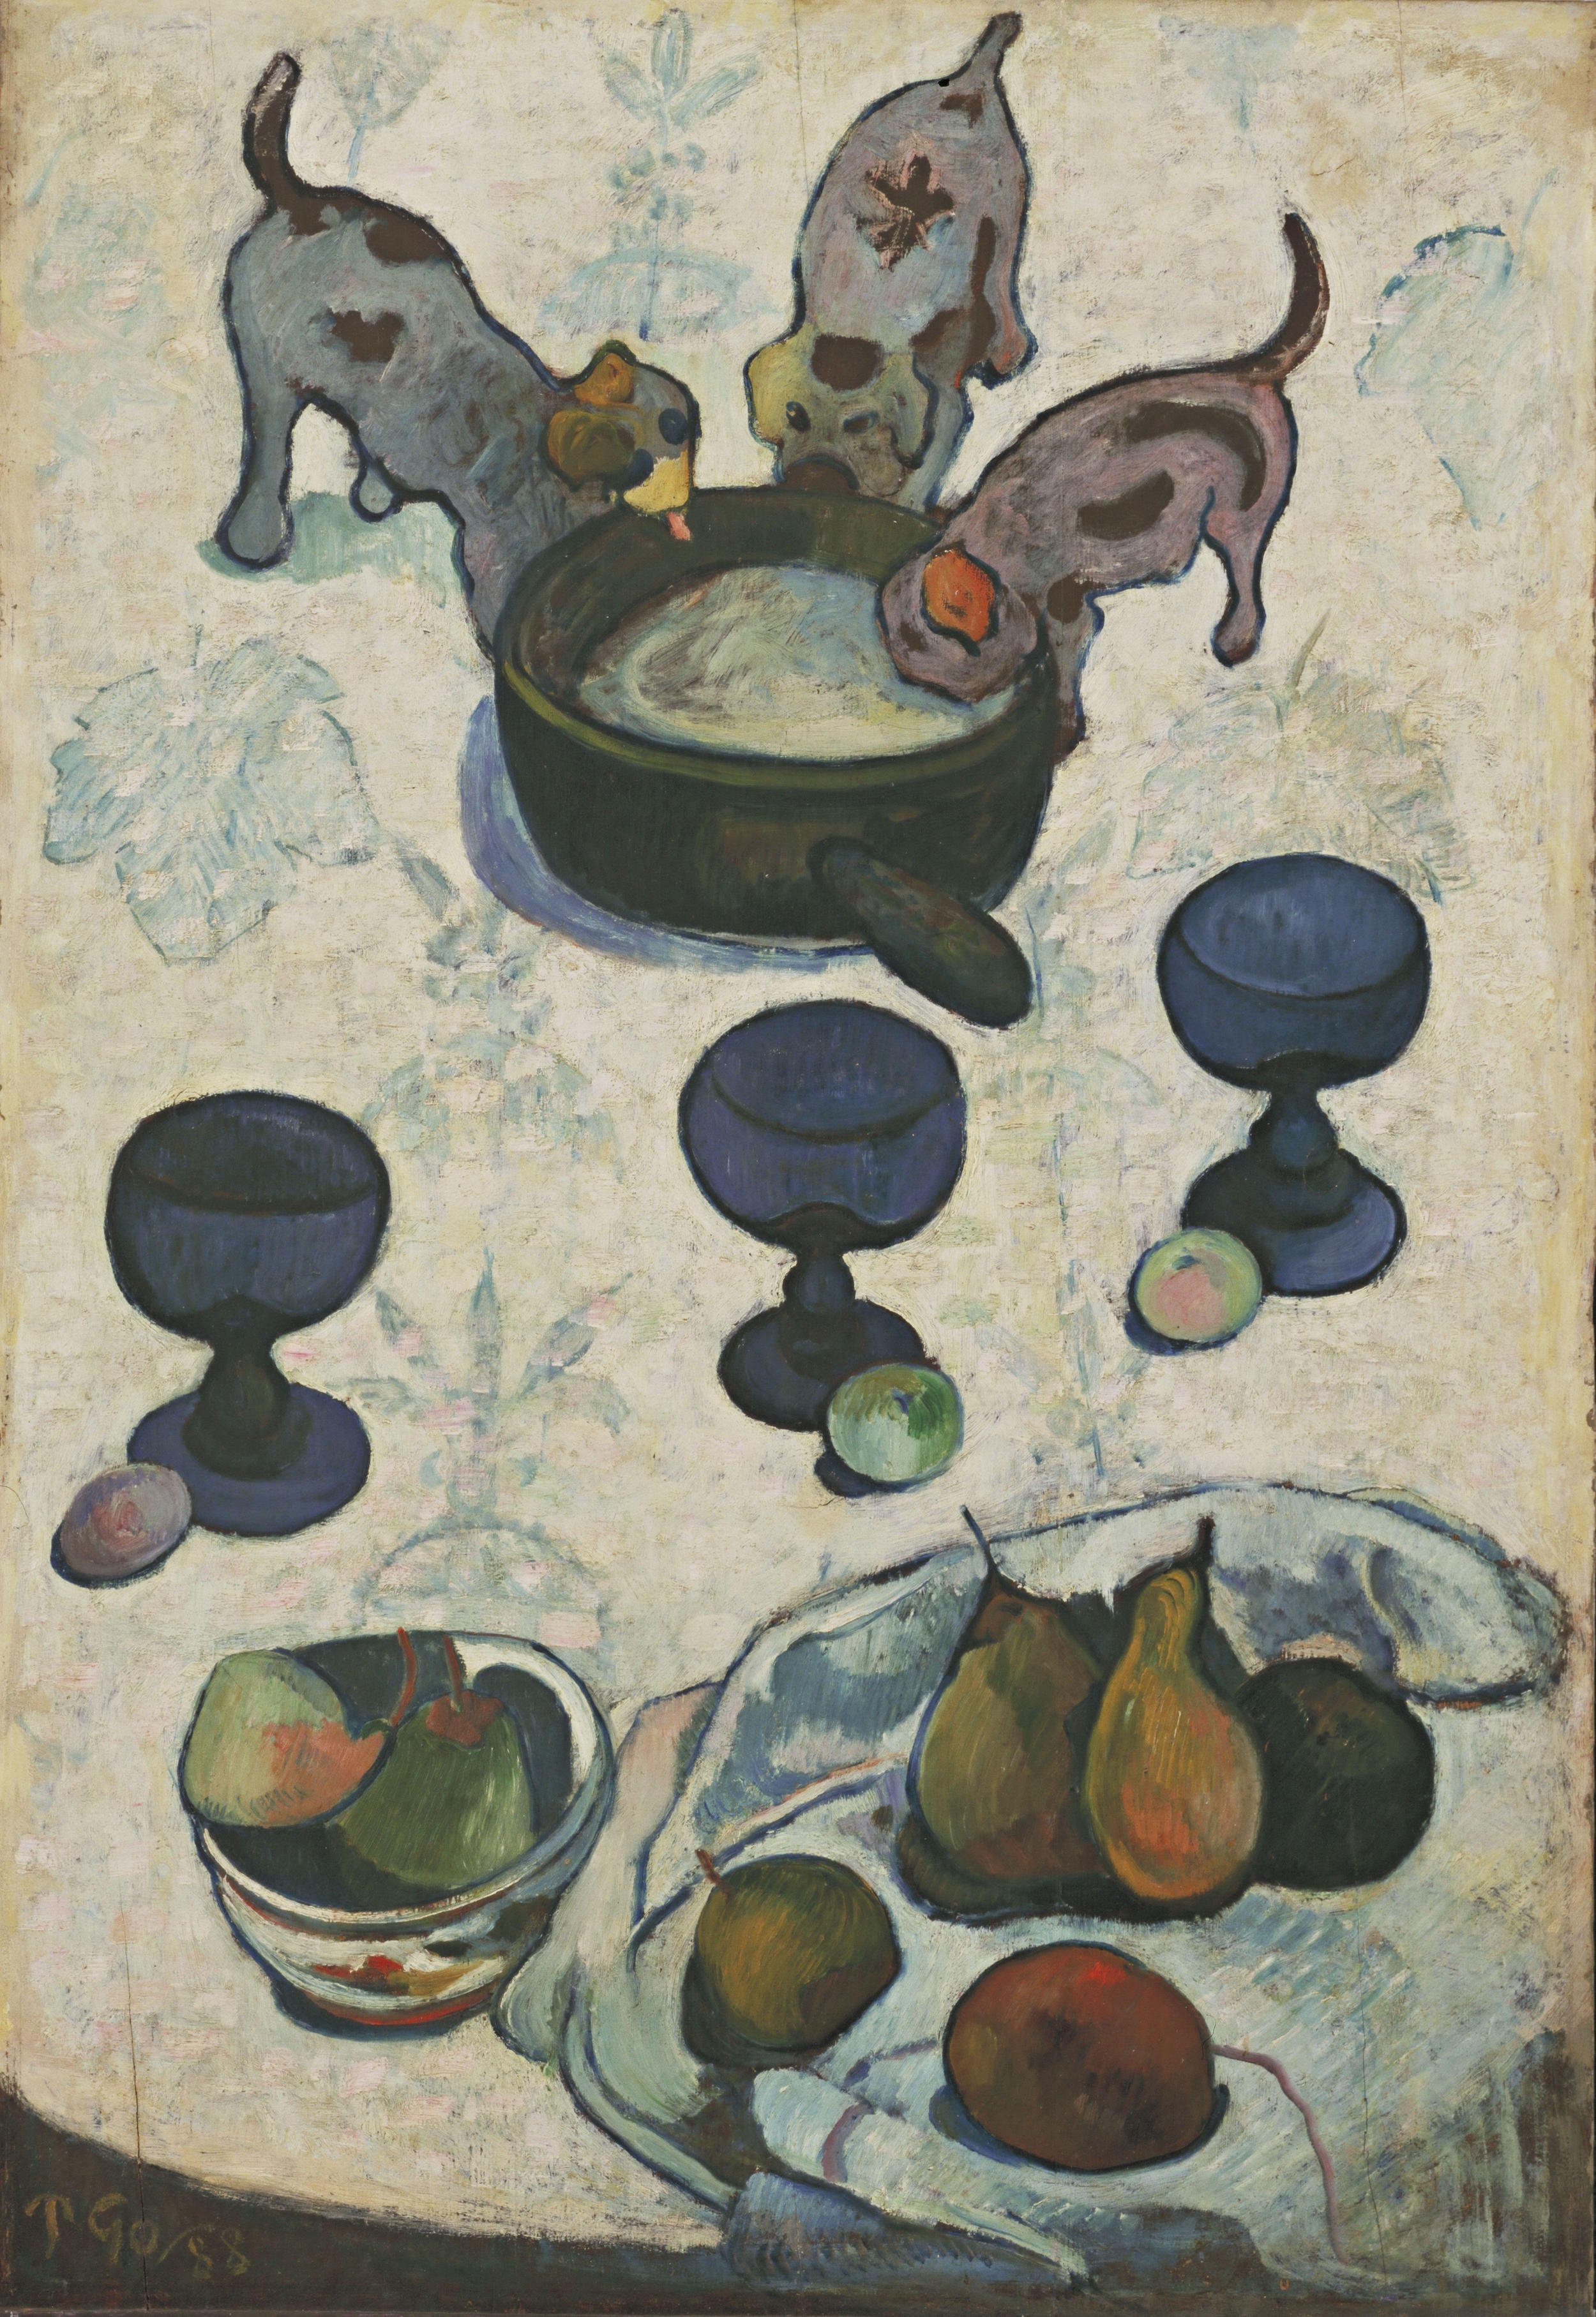 Nature morte aux trois chiots by Paul Gauguin - 1888 - 92 cm x 63 cm Museum of Modern Art